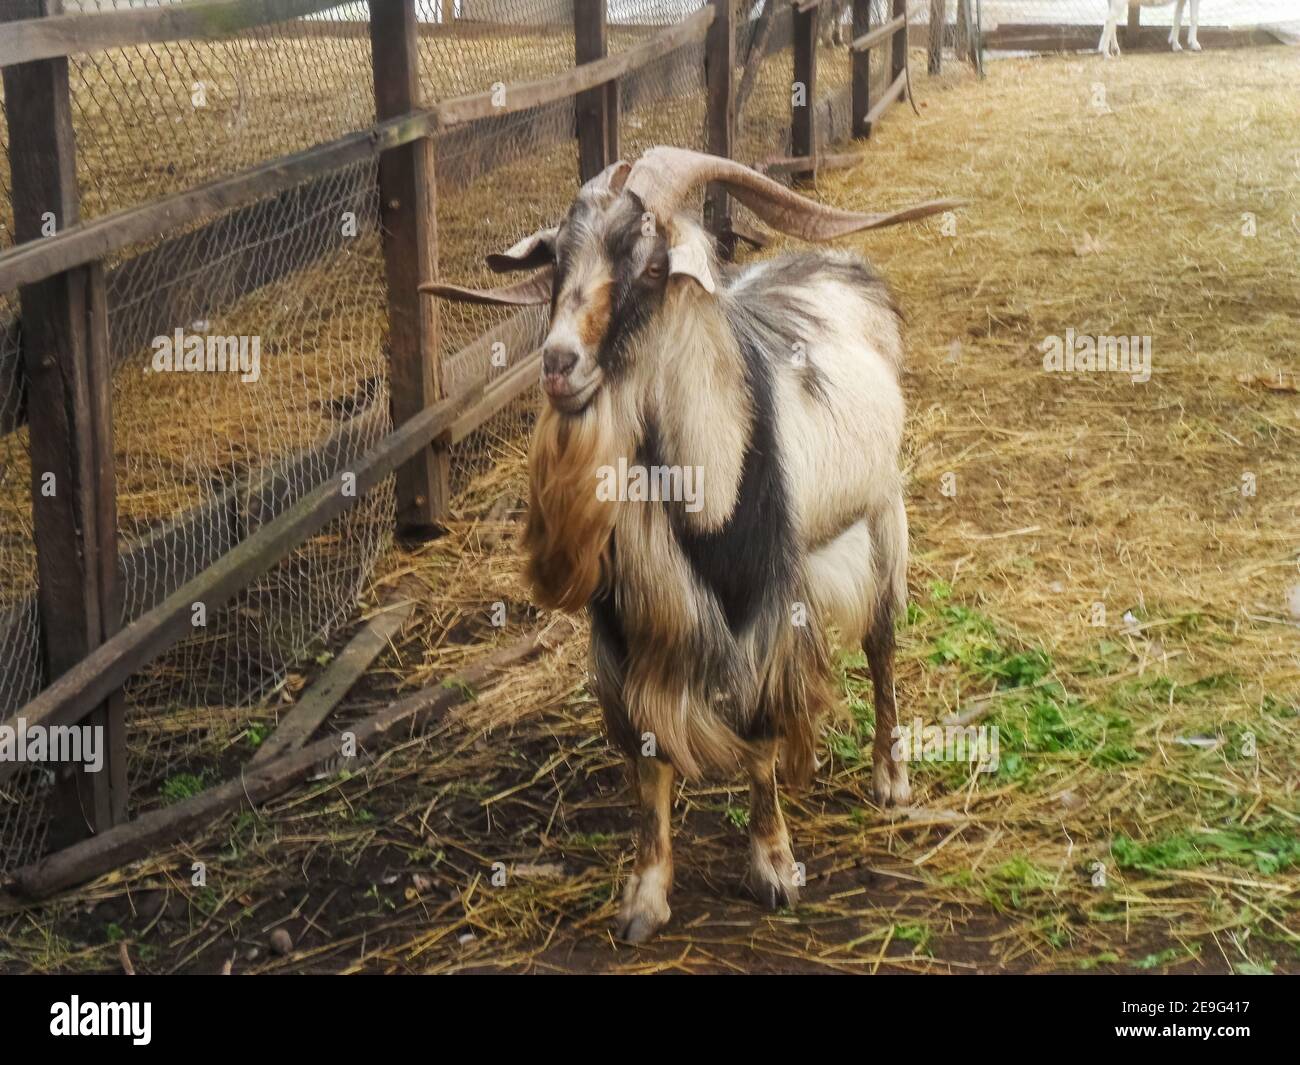 capra lunga bianca, nera e marrone con corna lunghe in un fienile Foto Stock